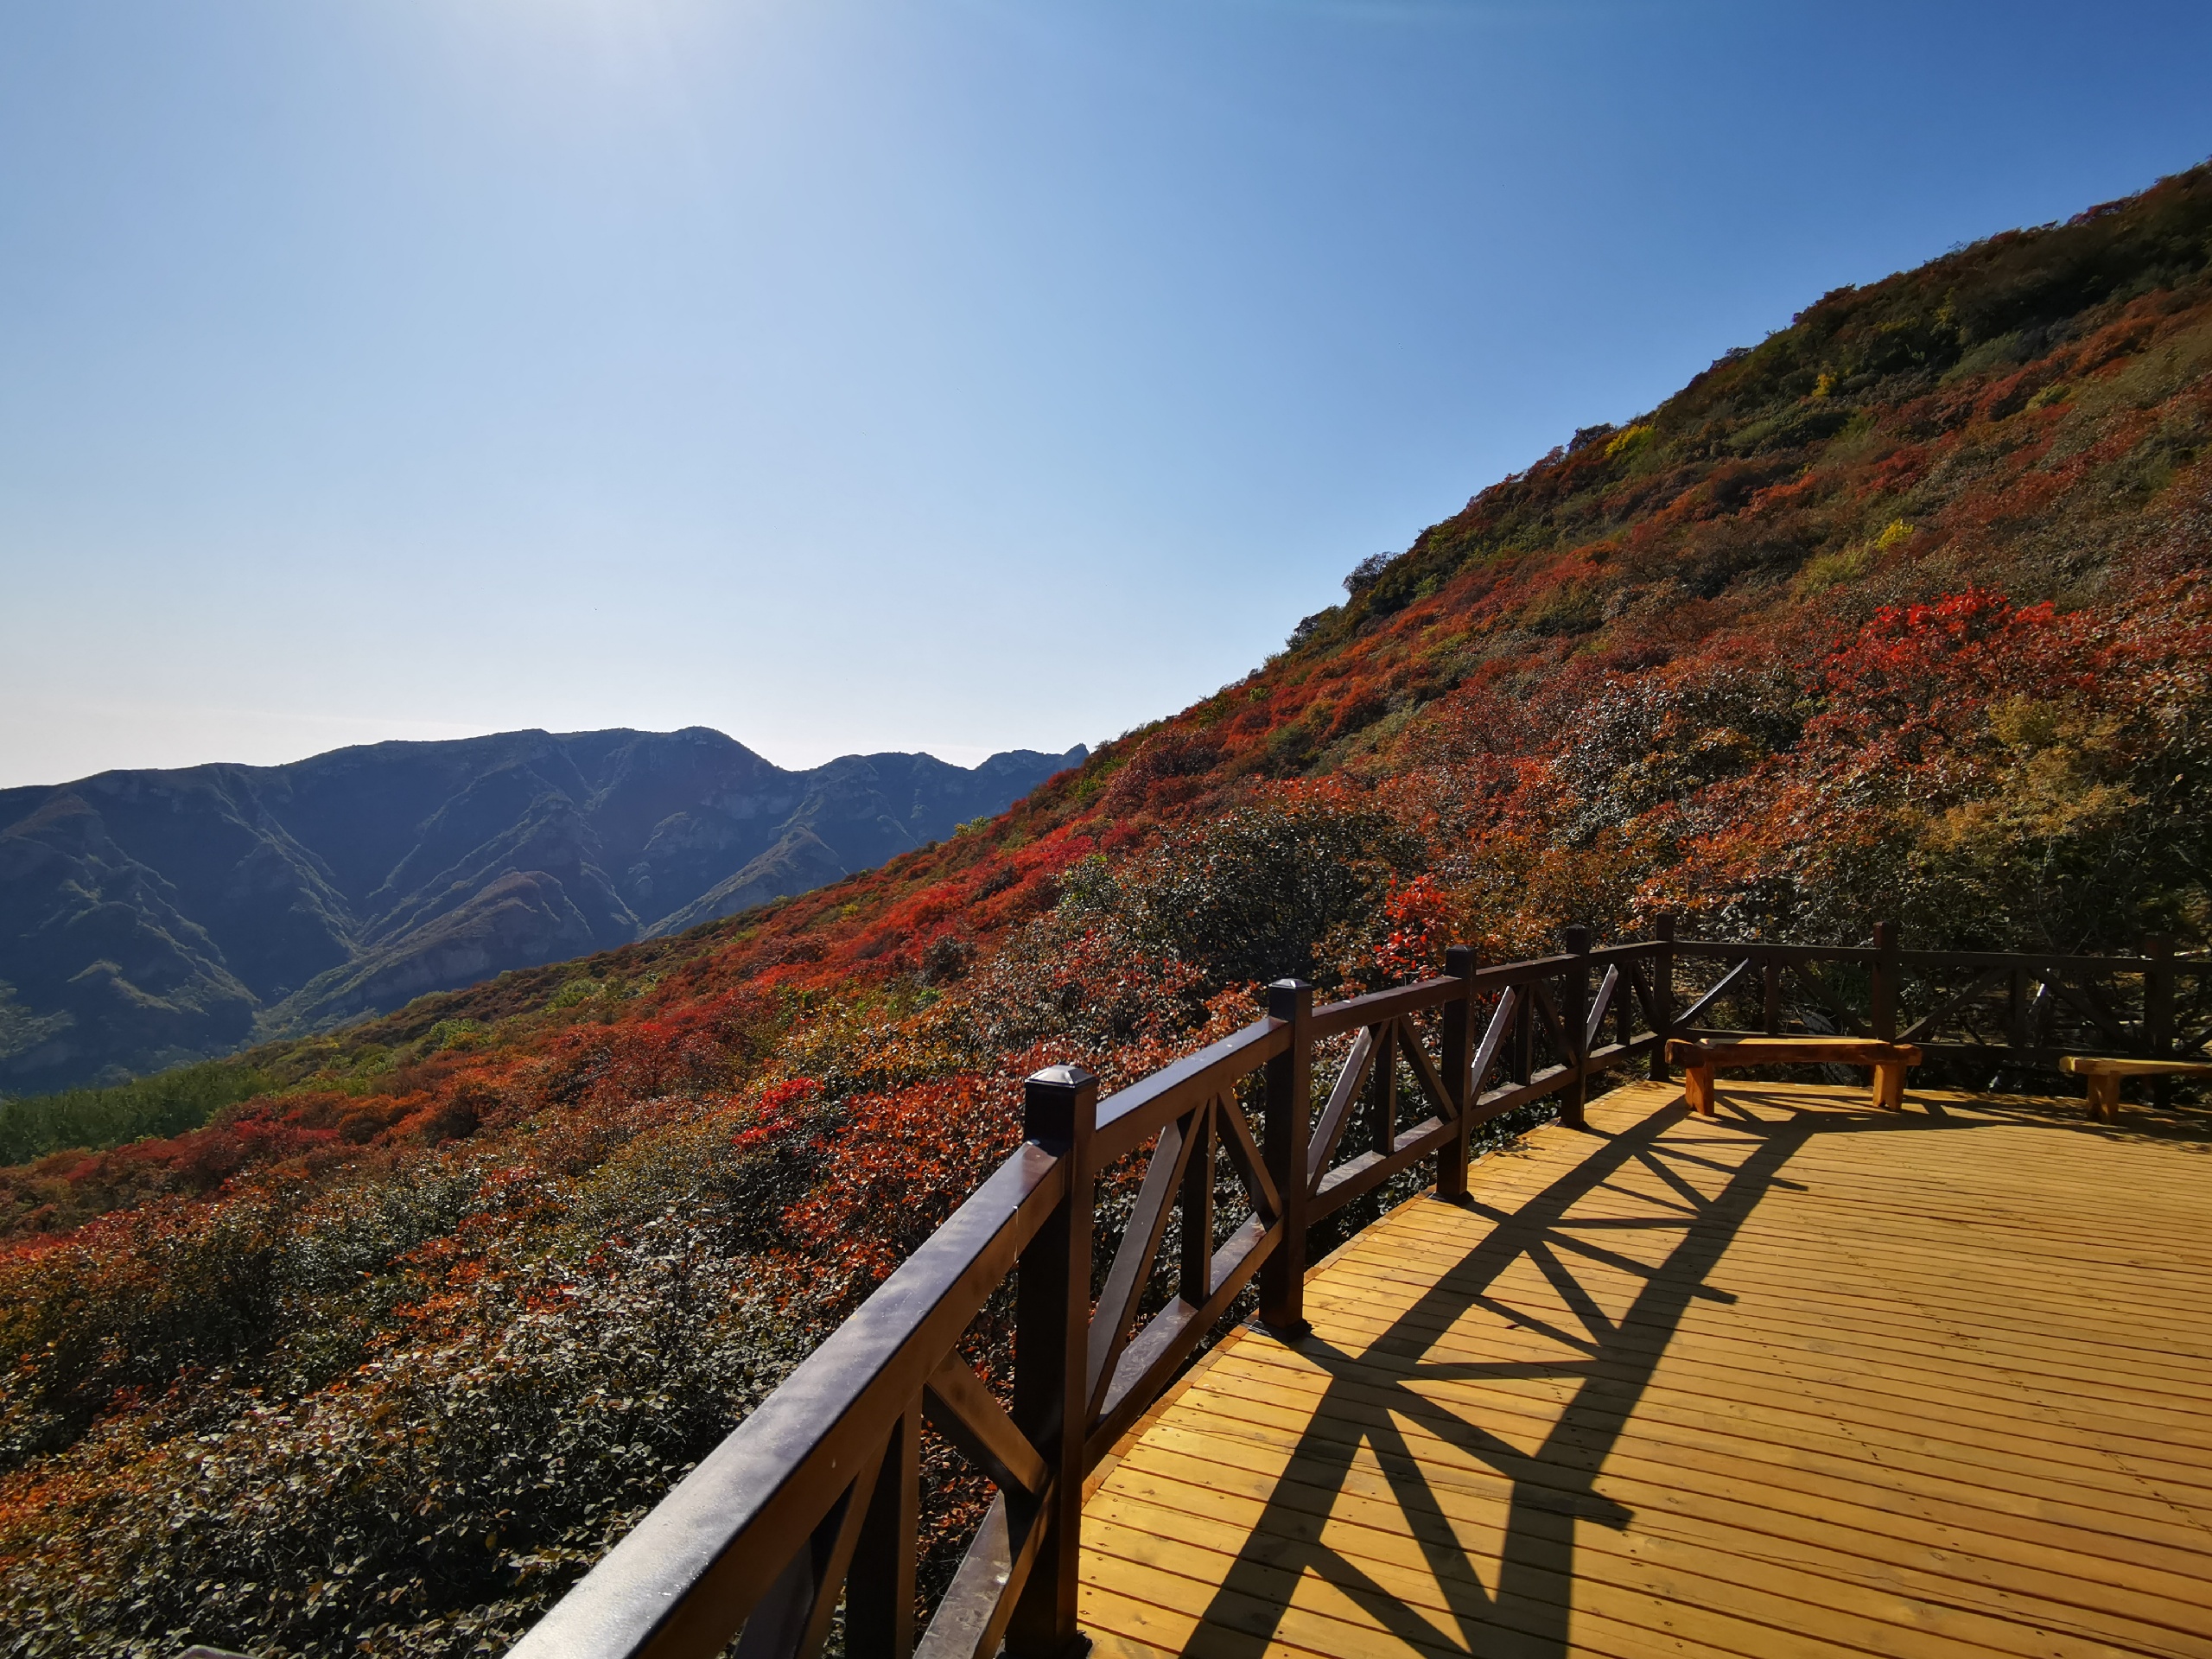 坡峰岭红叶节色彩斑斓 相比于香山公园有过之而无不及